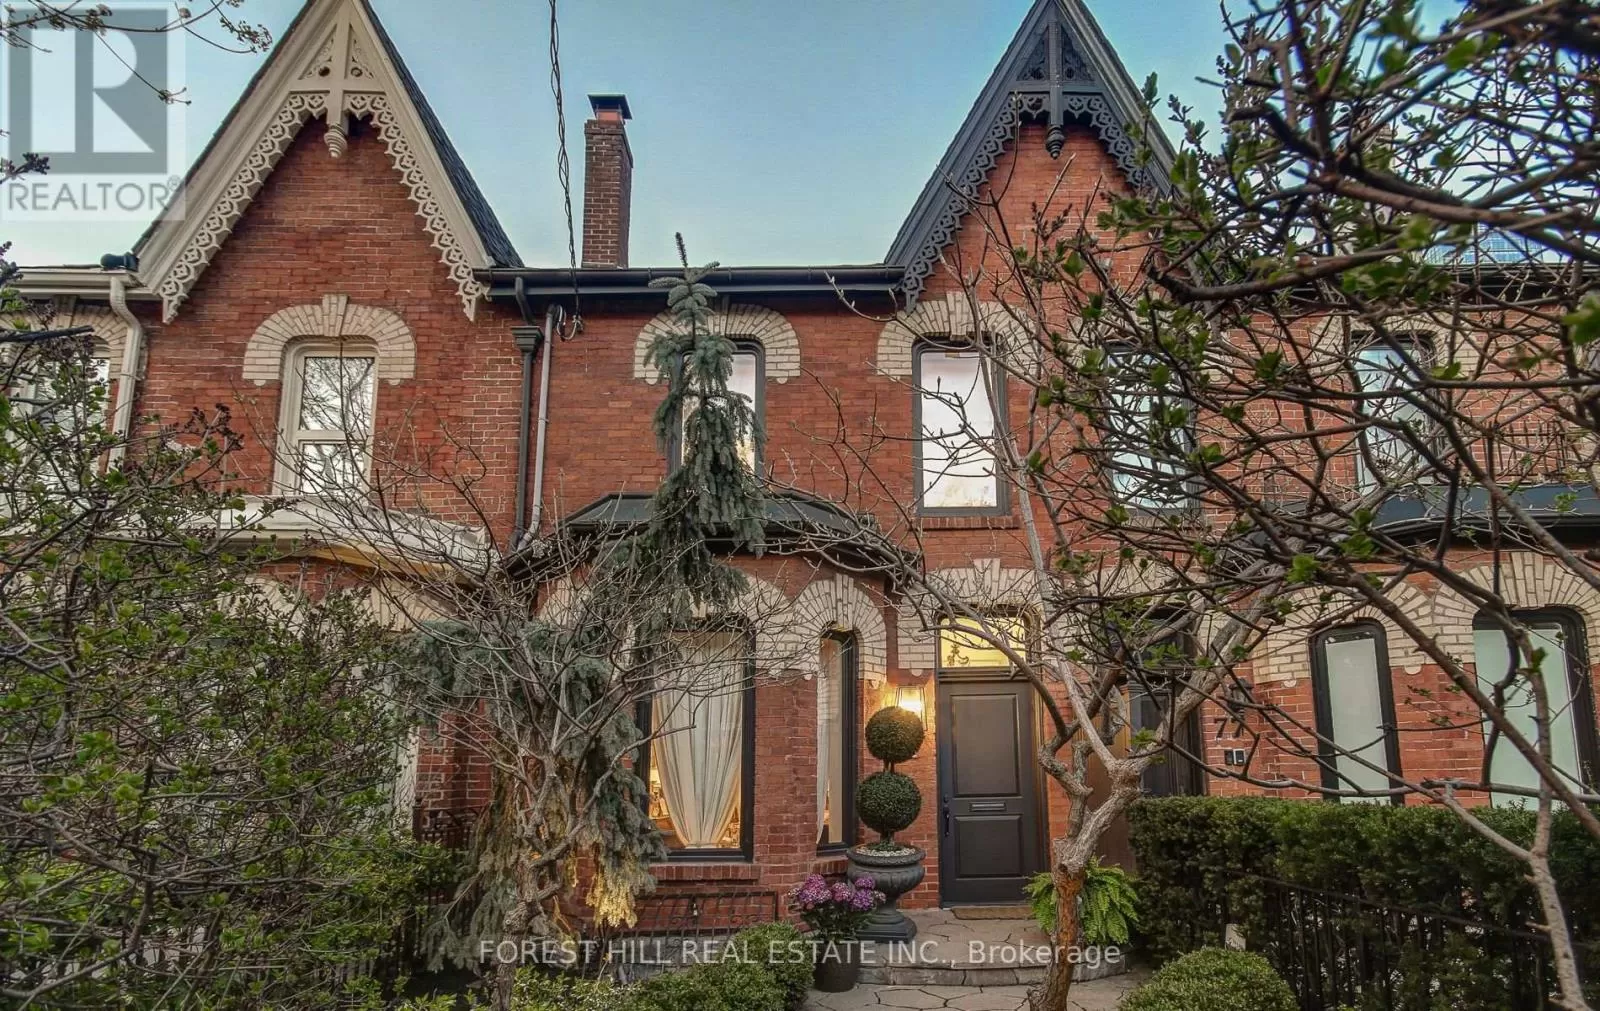 Row / Townhouse for rent: 79 Hazelton Avenue, Toronto, Ontario M5R 2E3